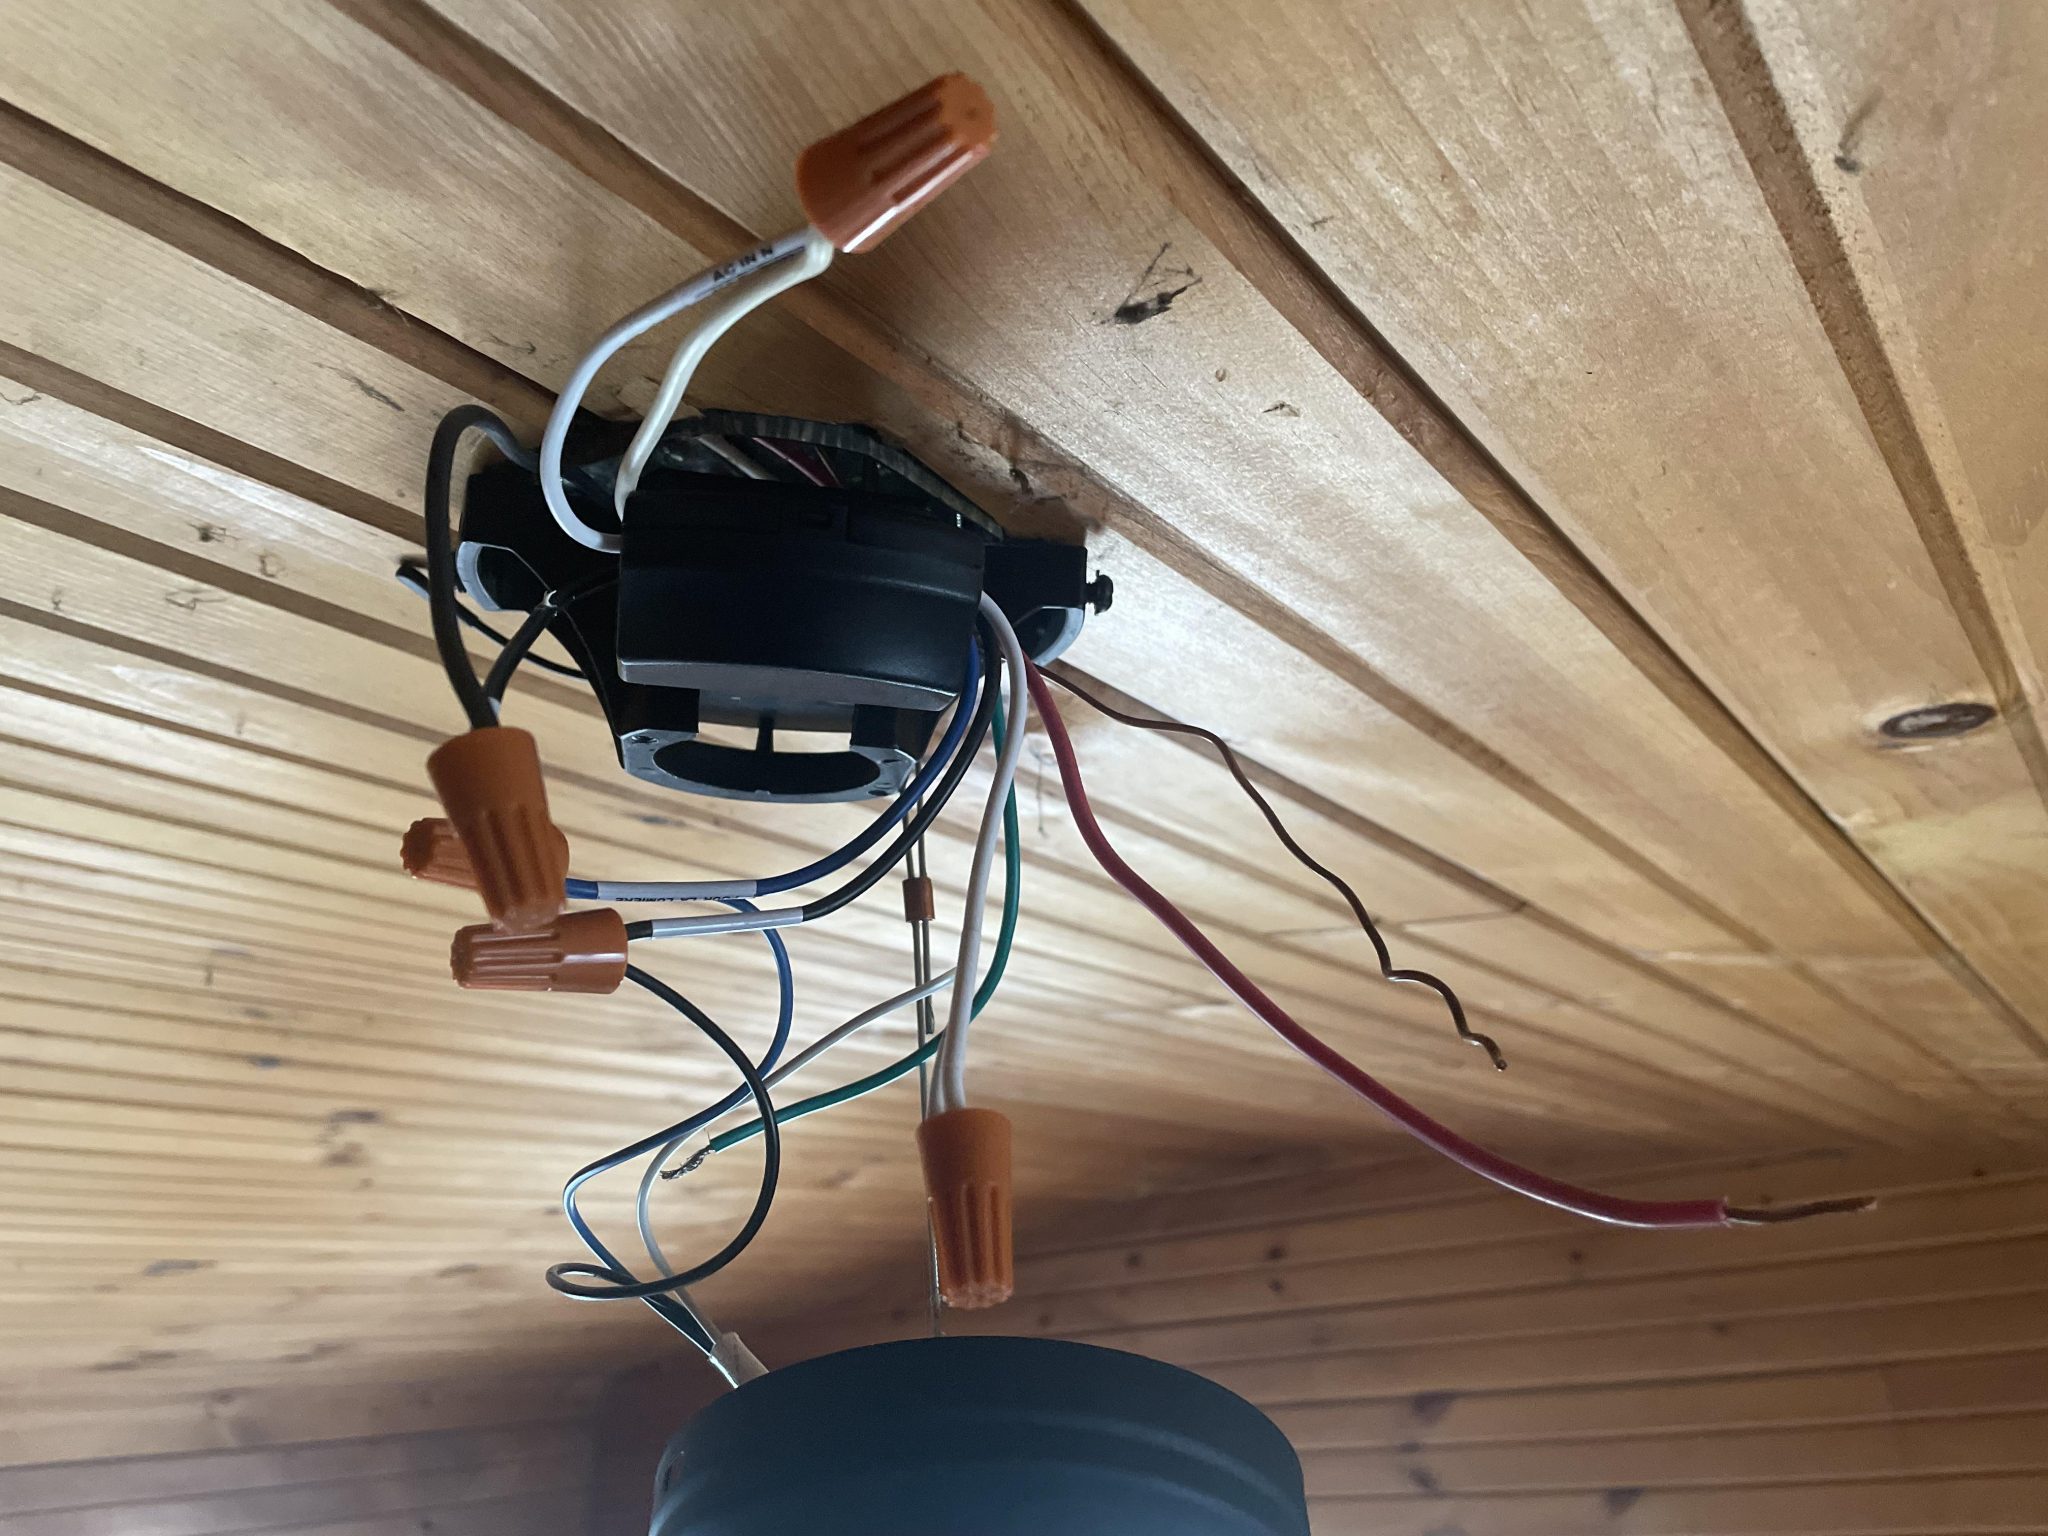 Installing Ceiling Fan Red Wire 2048x1536 